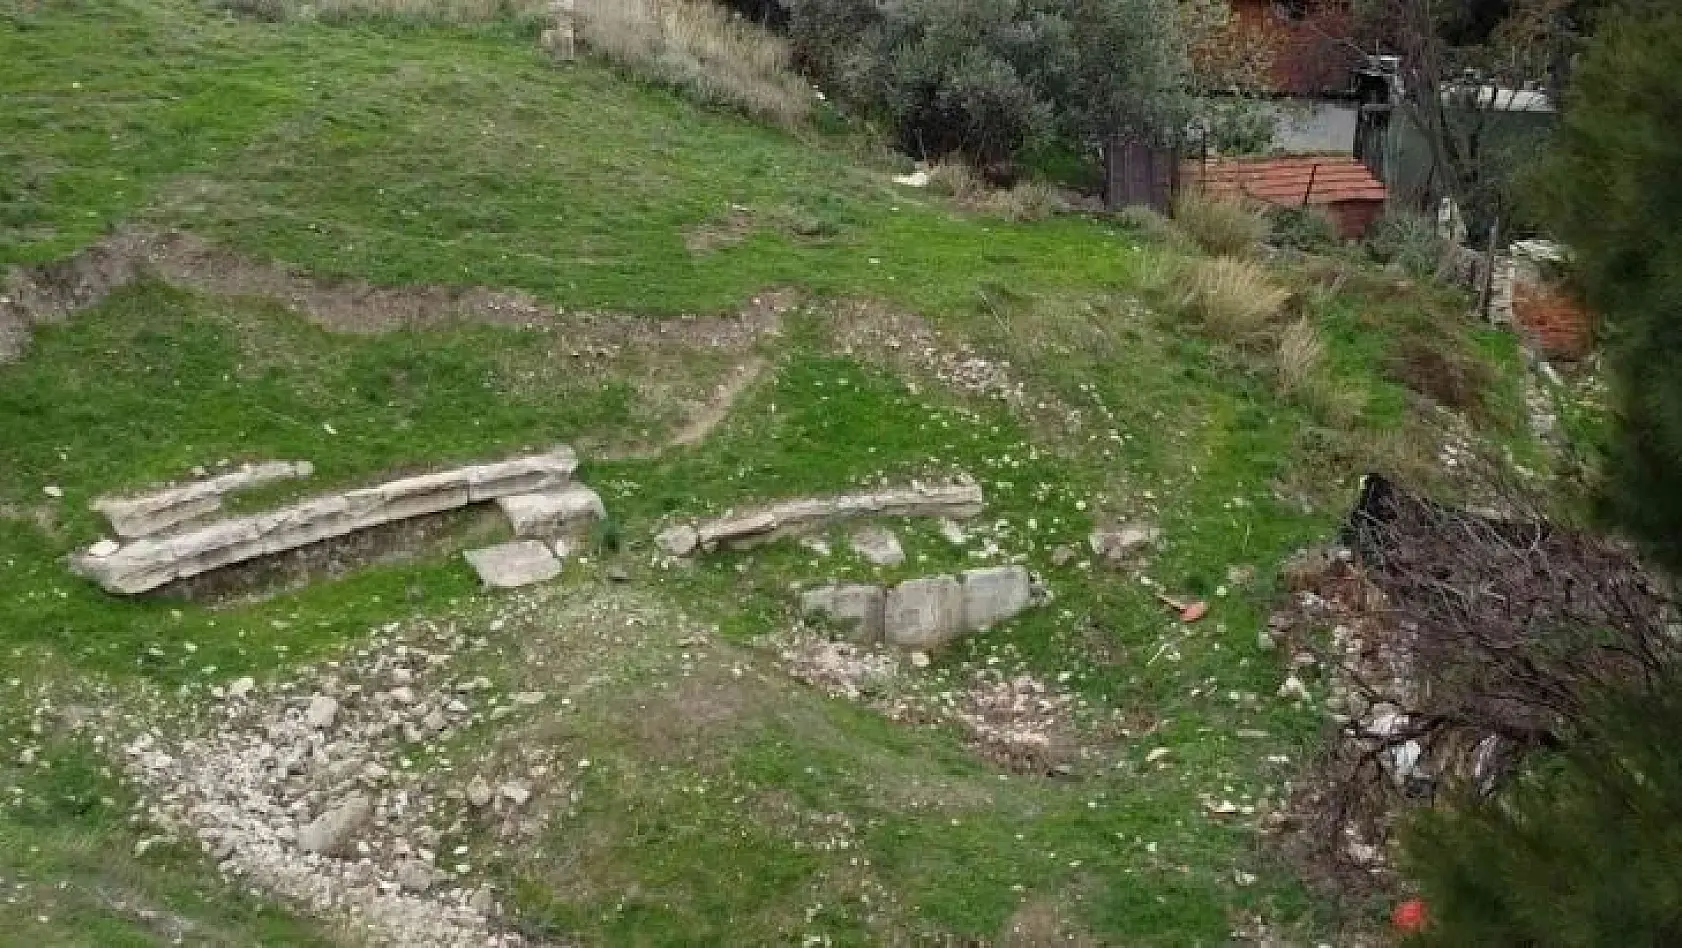 Anadolu'nun bilinen en eski taş tiyatrosu gün yüzüne çıkmayı bekliyor